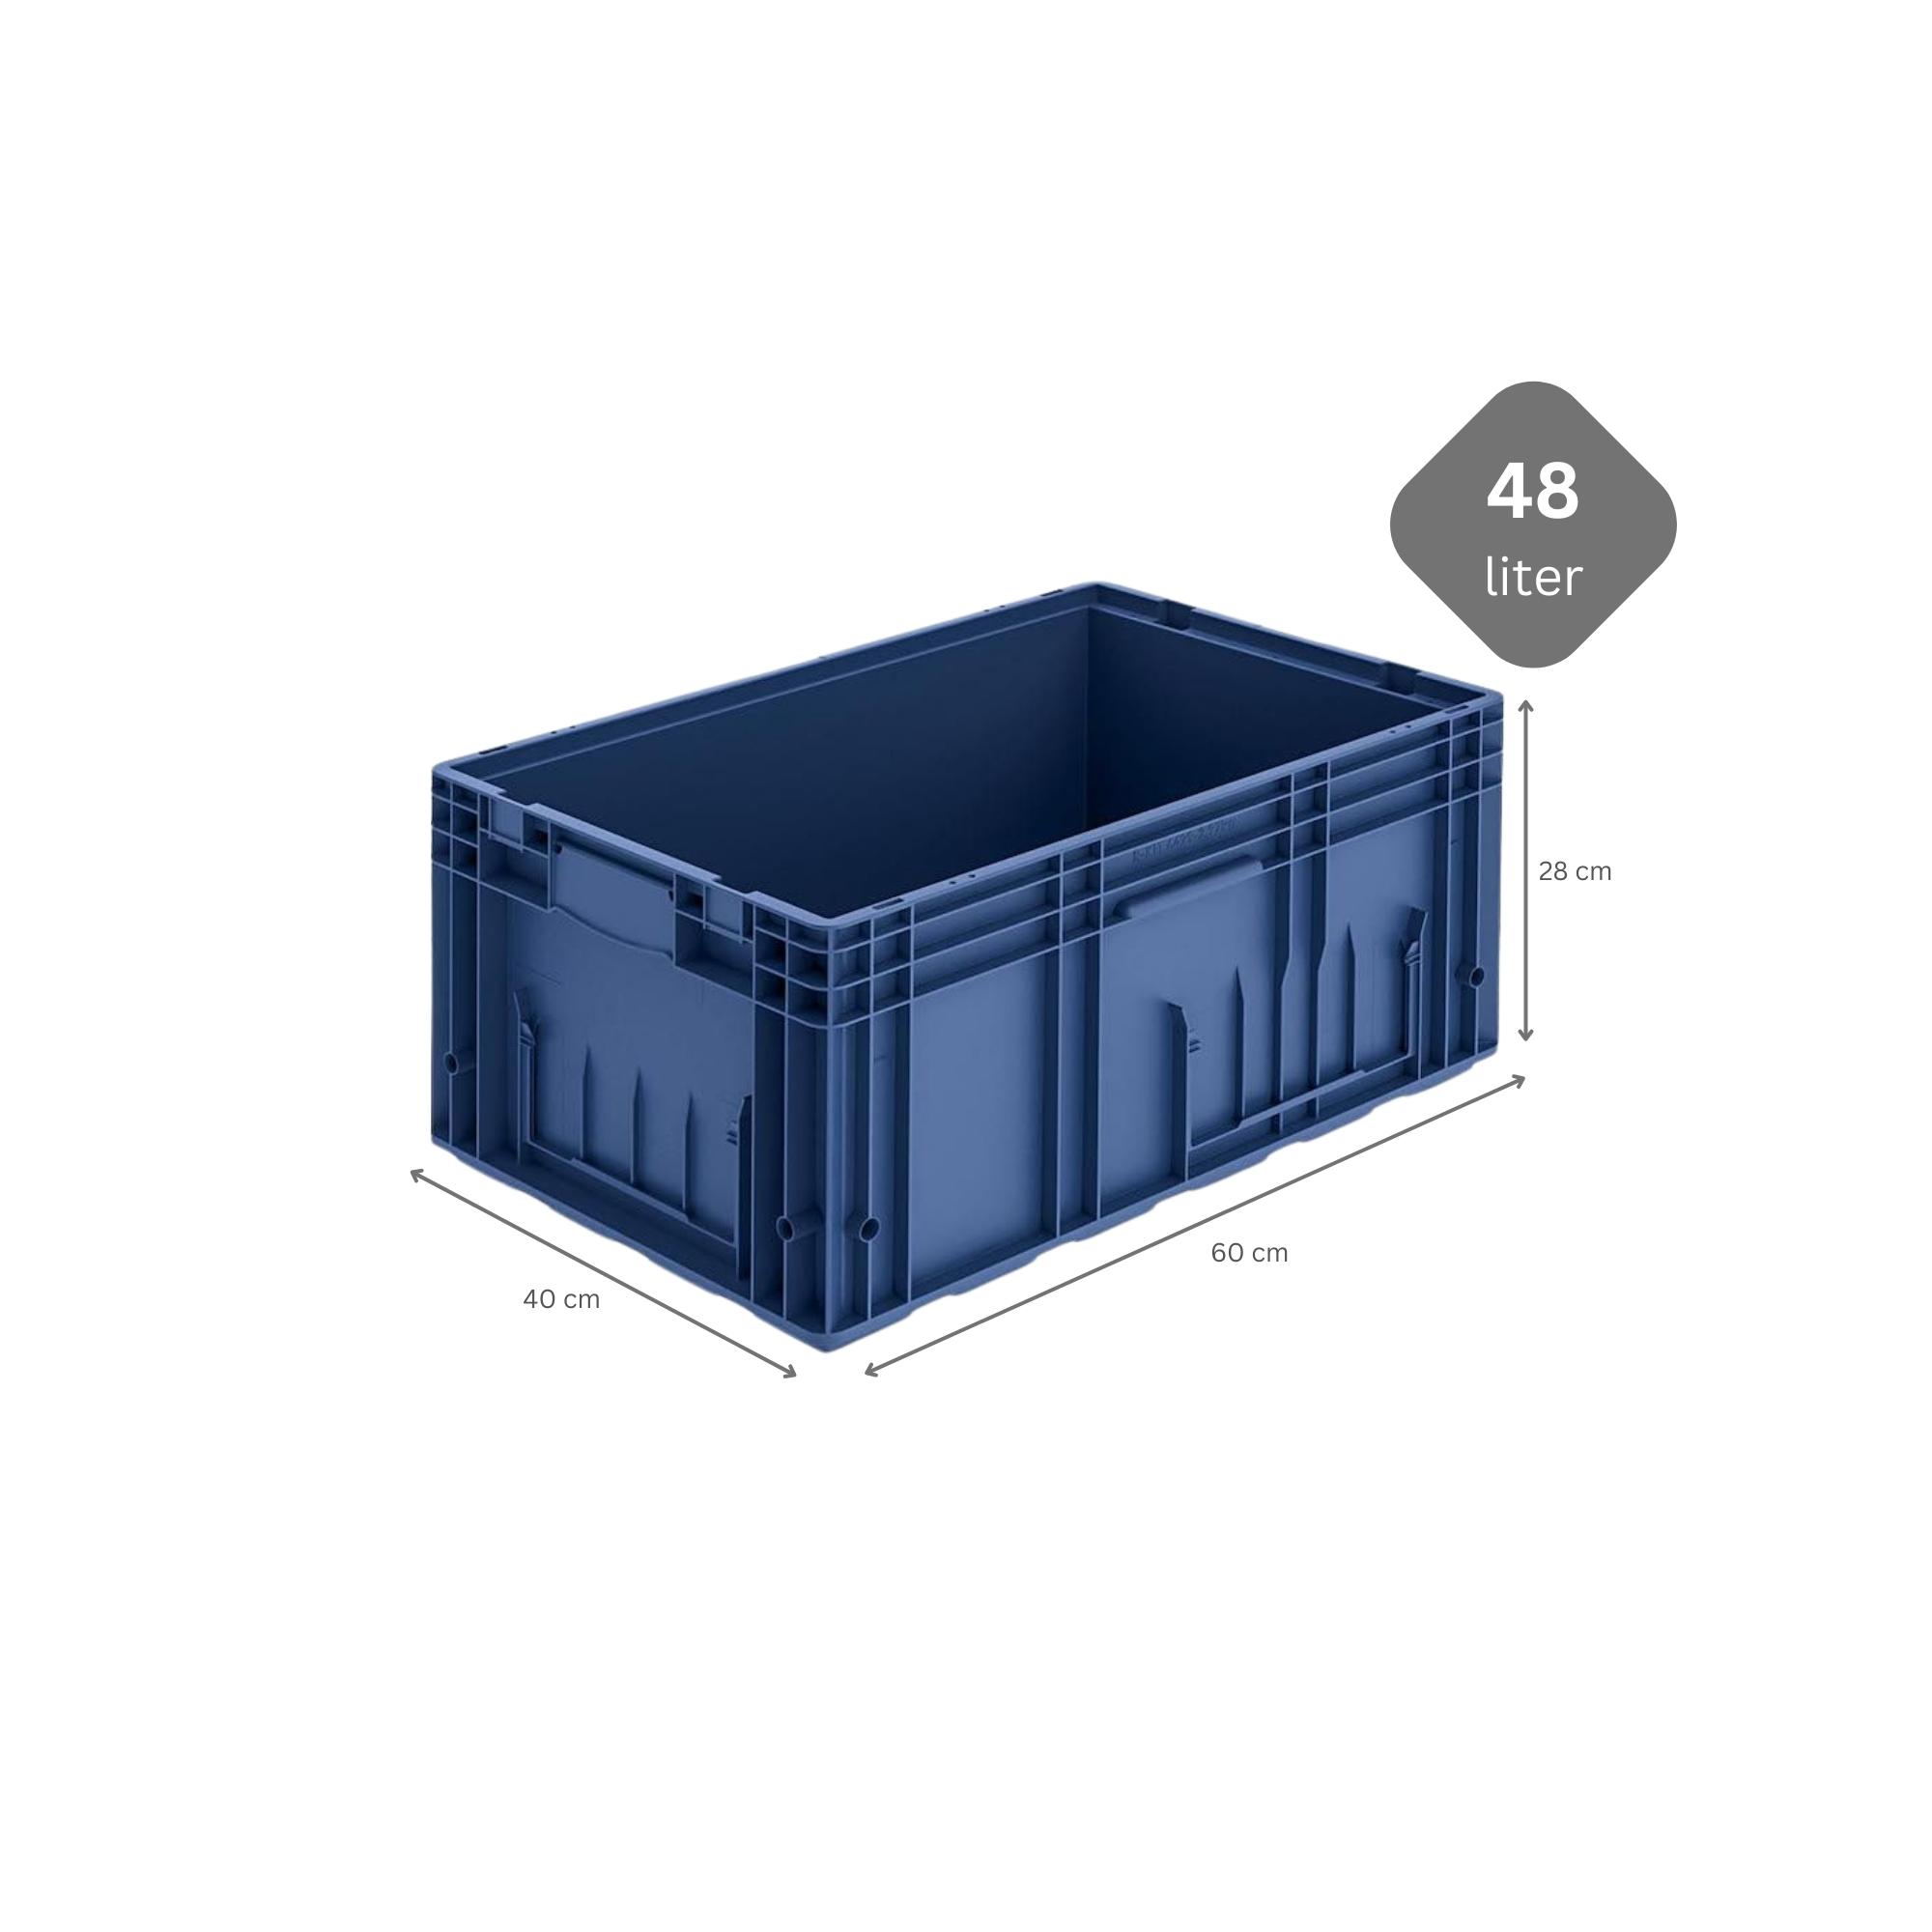 VDA KLT Kleinladungsträger mit Verbundboden | HxBxT 28x40x60cm | 48 Liter | KLT, Transportbox, Transportbehälter, Stapelbehälter